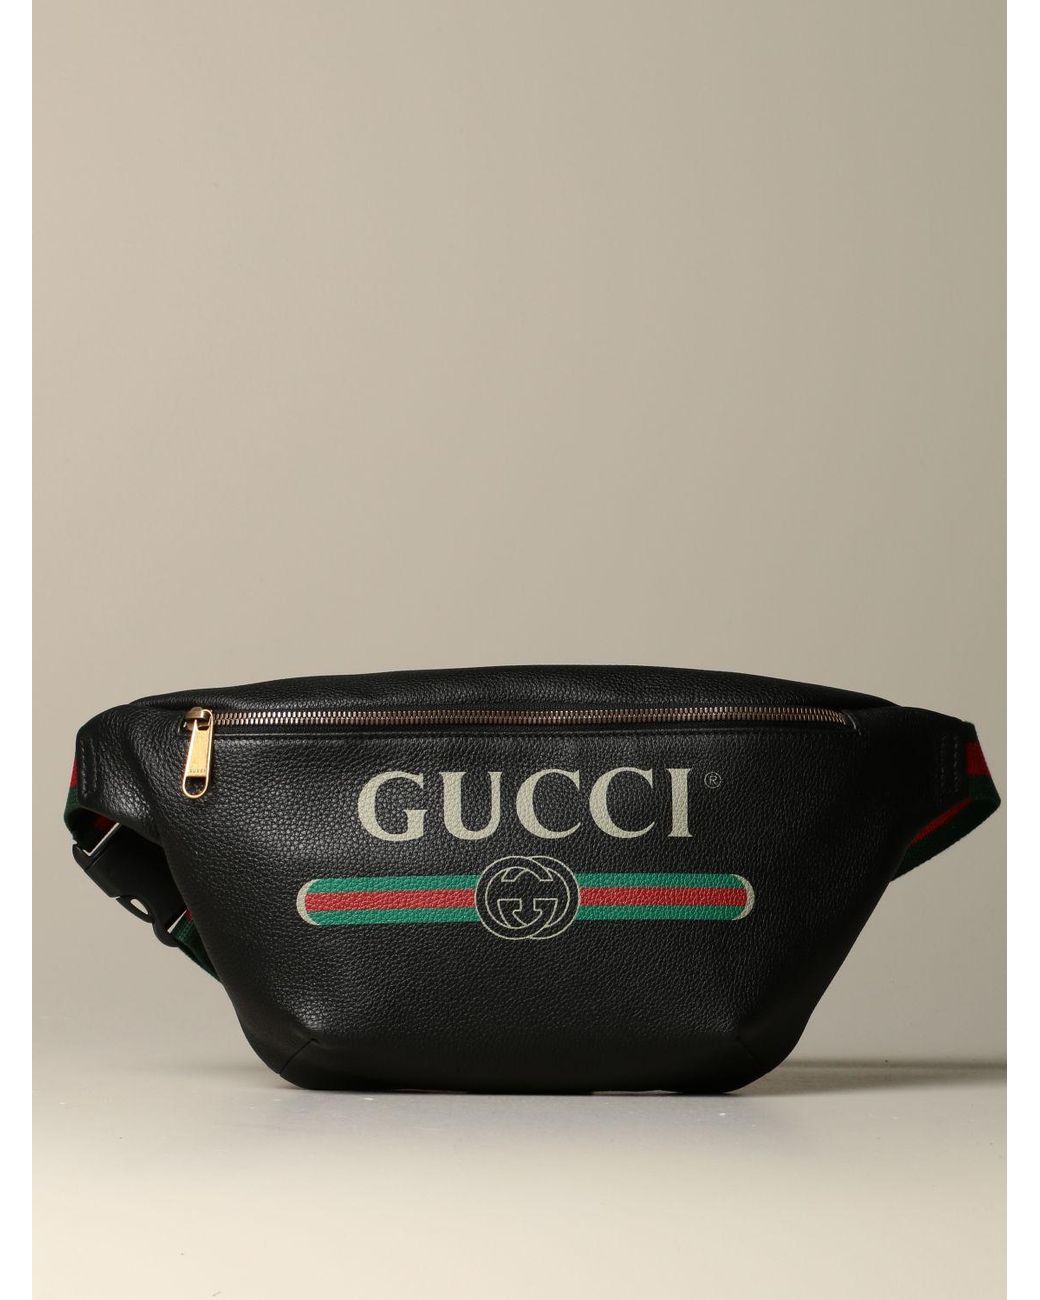 Gucci Gg Accessories Pouch Canvas